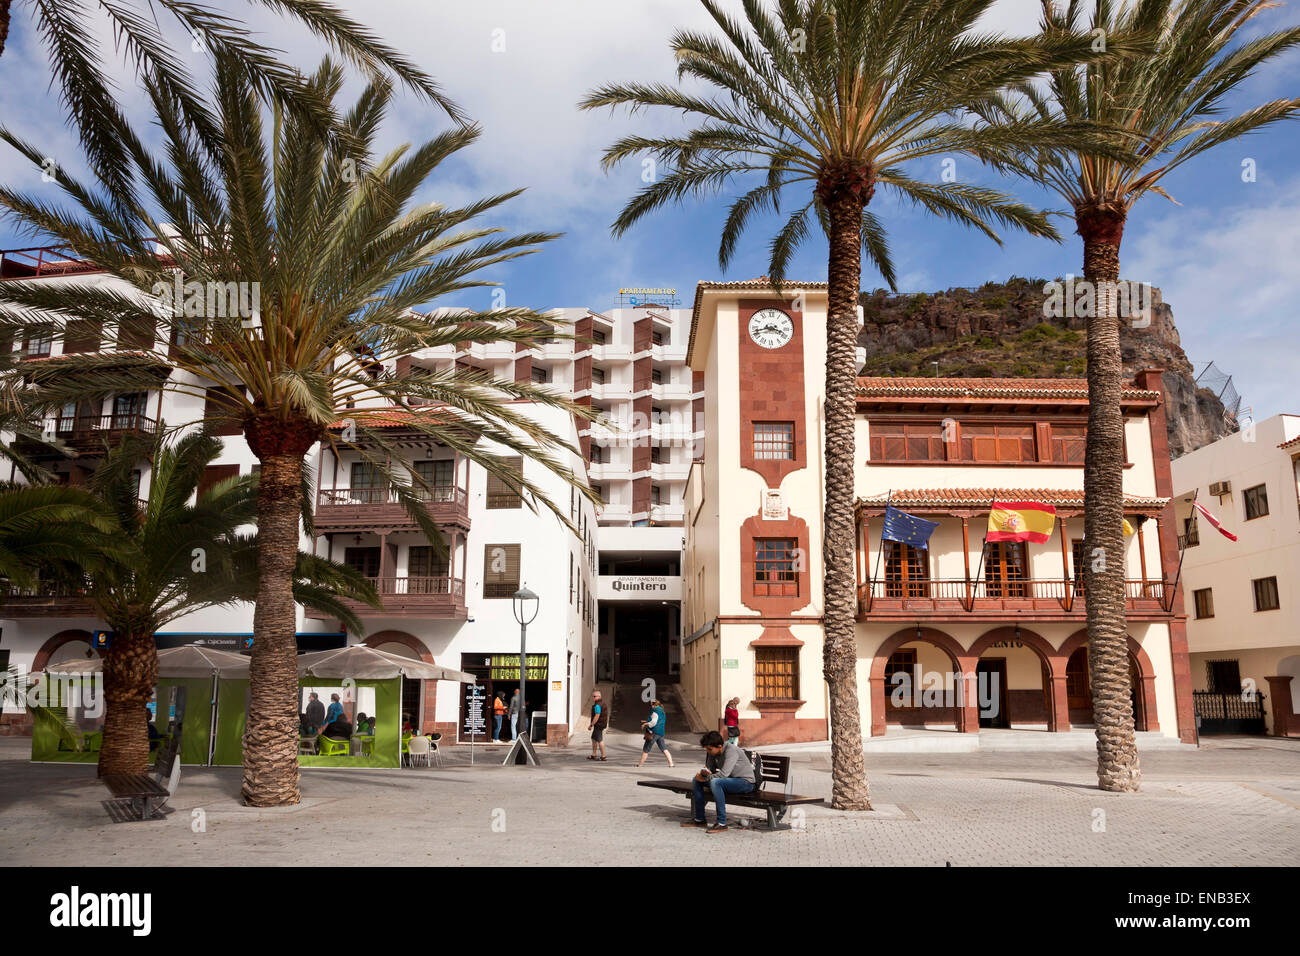 City Hall or Ayuntamiento on  Plaza de las Americas square, island capital  San Sebastian de La Gomera, La Gomera, Canary Island Stock Photo